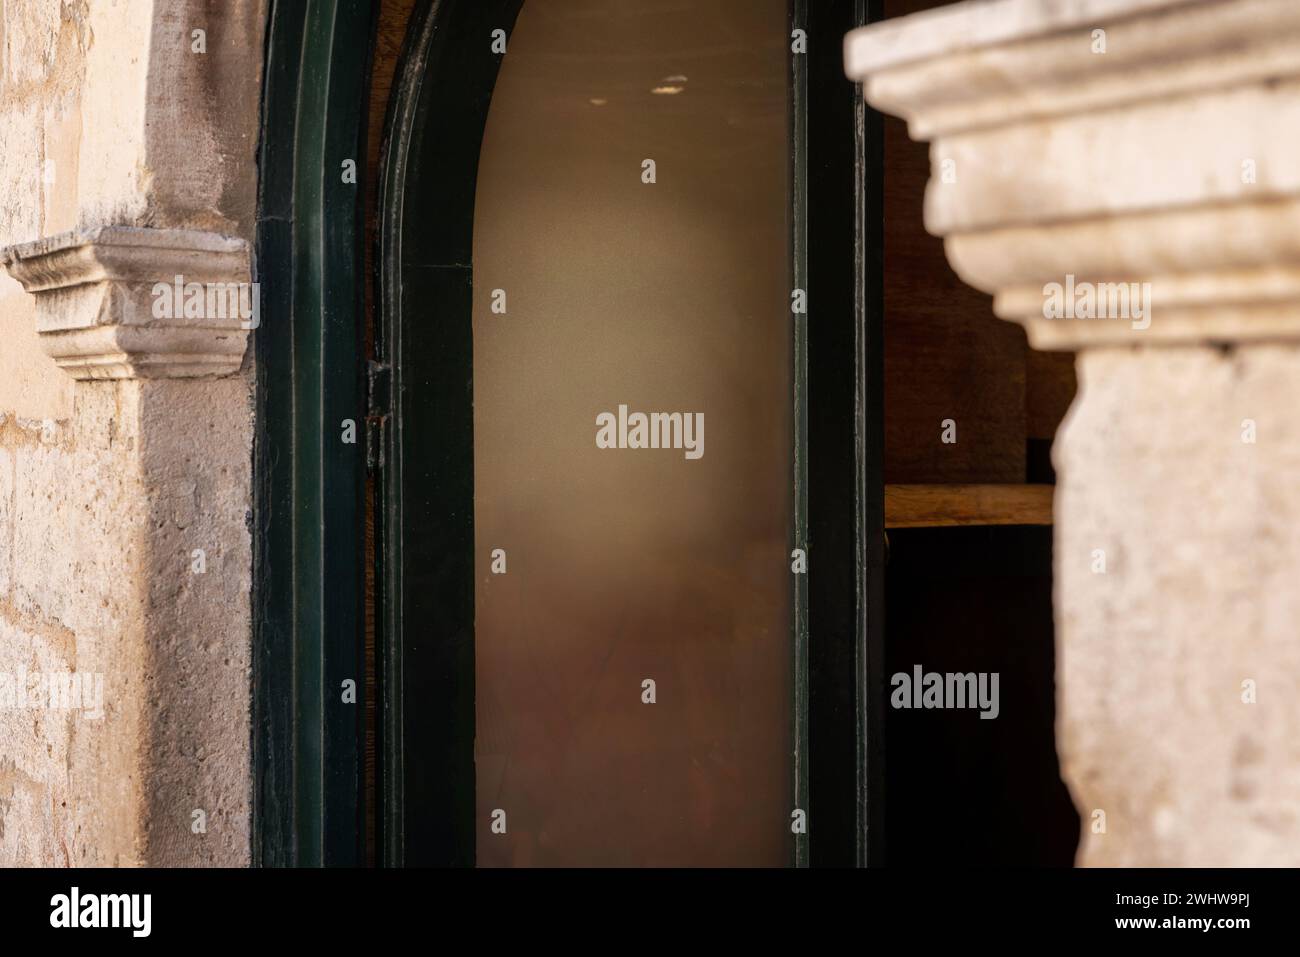 Eingang zum Geschäft oder Restaurant, ein sauberes Fenster dient als Leinwand für Logo-Werbung. Der alte Türrahmen und die Steinmauer sorgen für rustikalen Charme Stockfoto